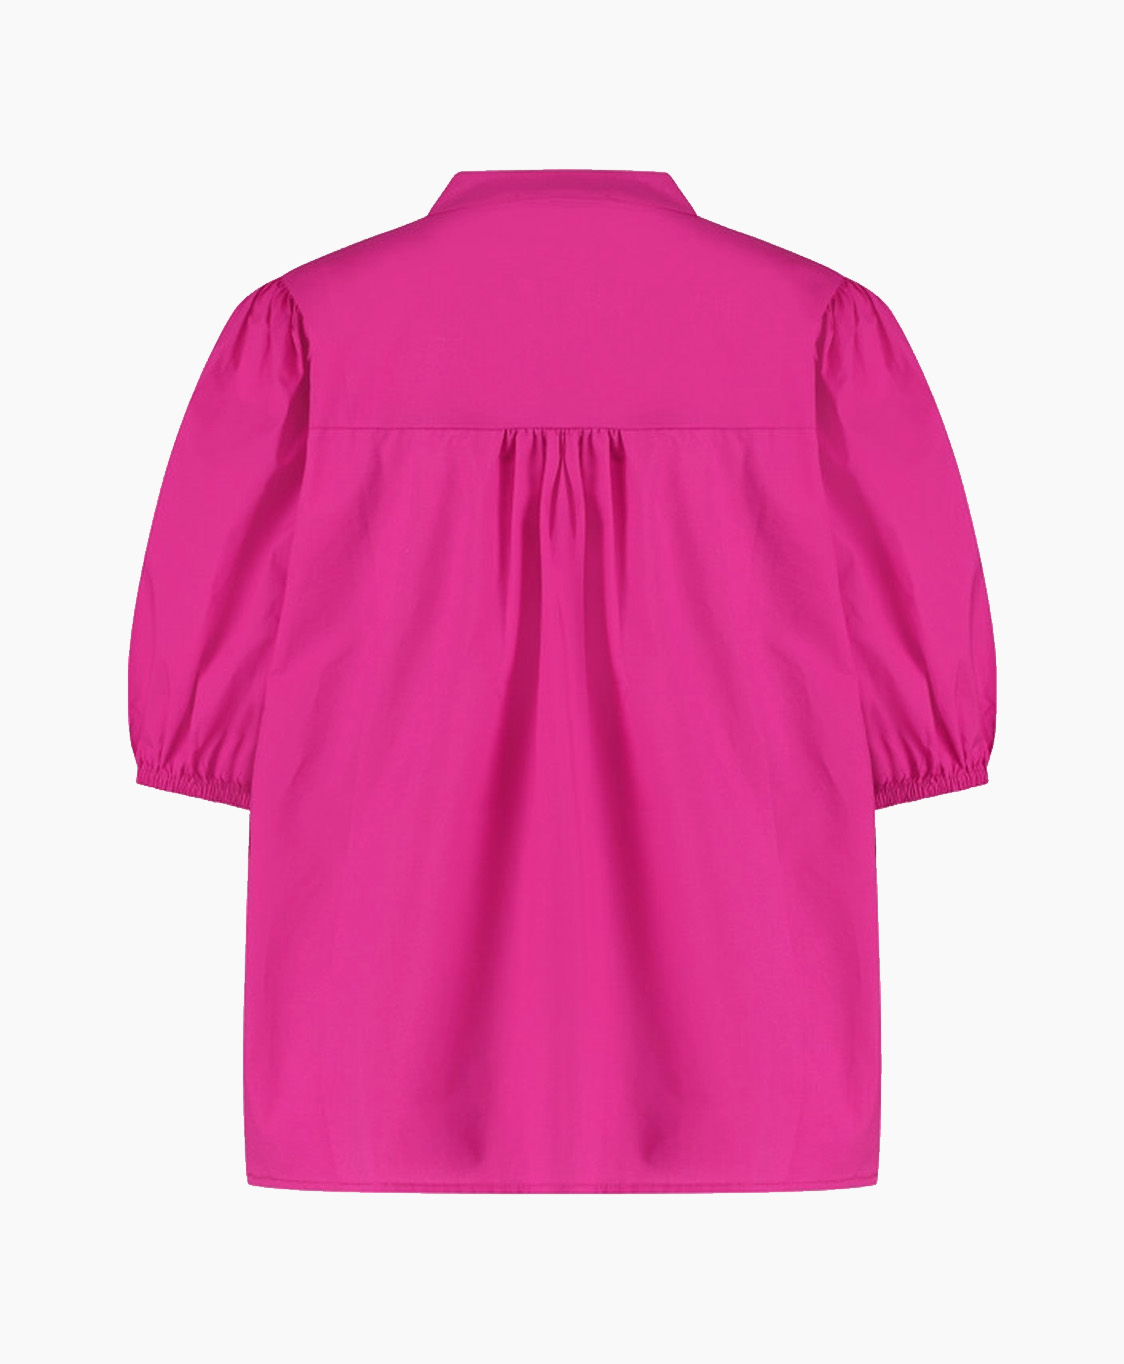 Studio Anneloes Top & T-shirt Birdie Poplin Blouse Pink